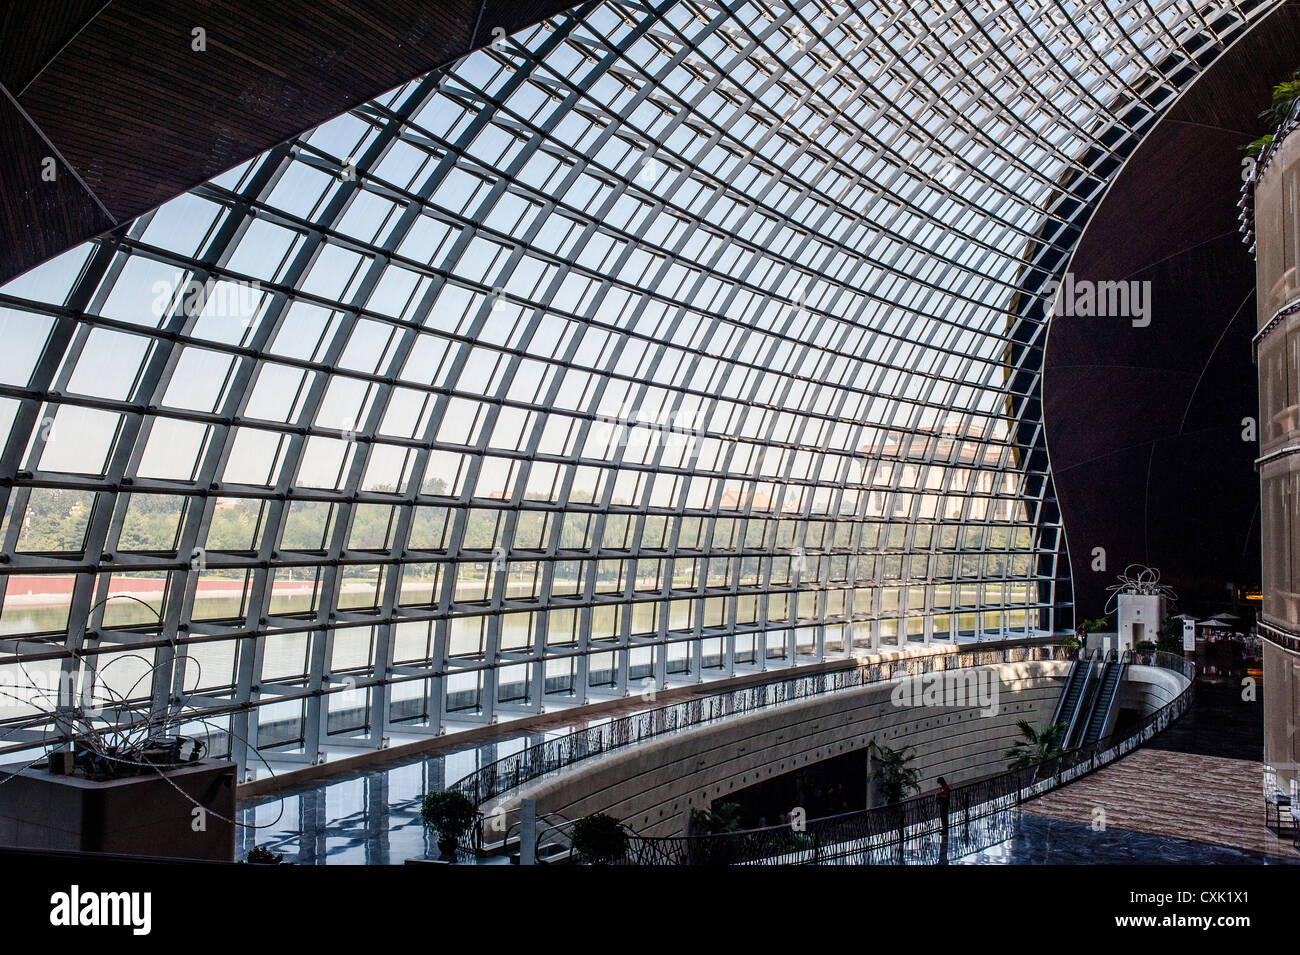 Bellissimo modello di telaio metallico all'interno dell'edificio, China National Grand Theatre Foto Stock